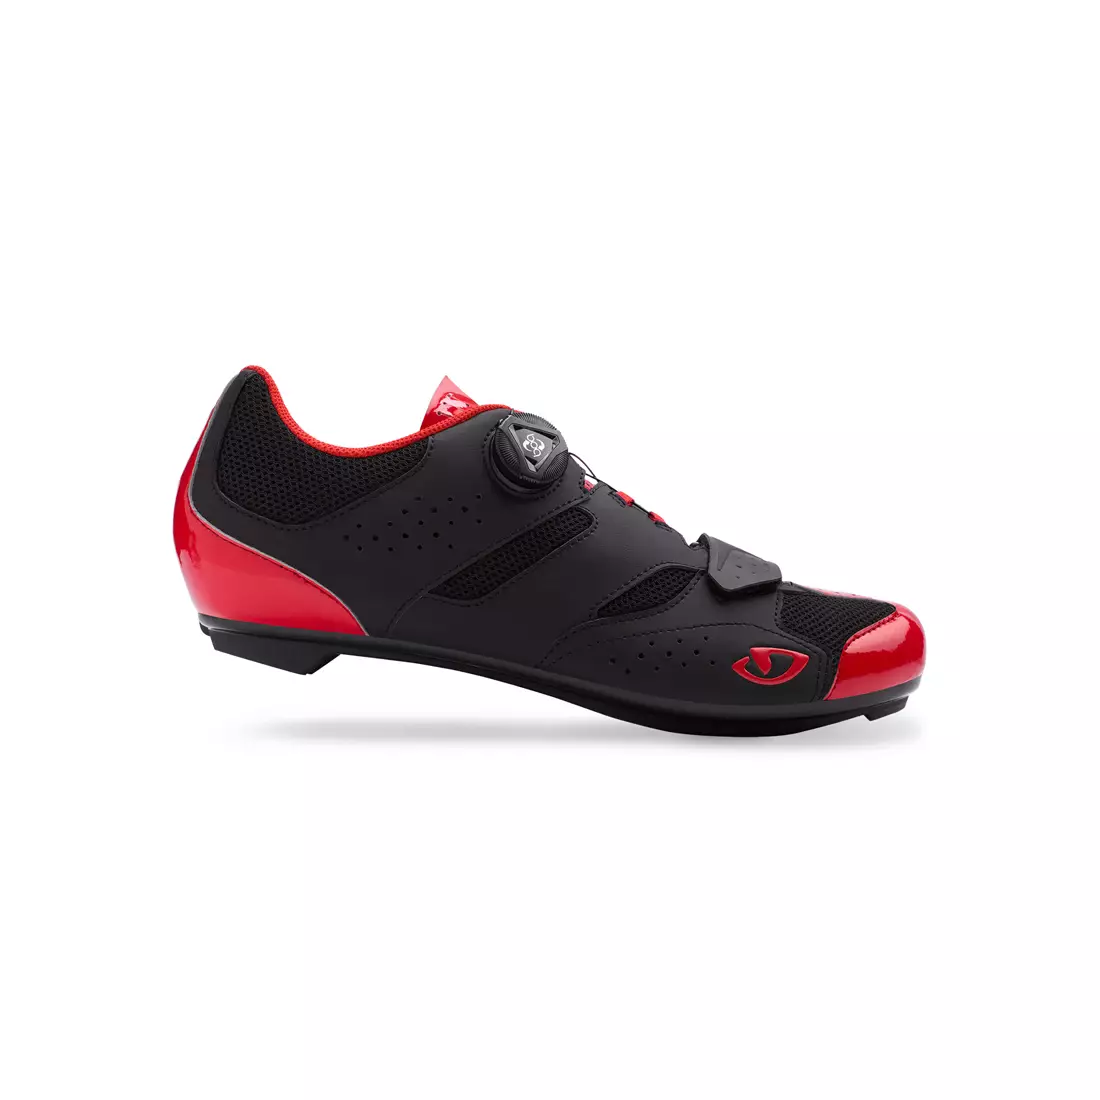 Pánská cyklistická obuv GIRO SAVIX bright red black 